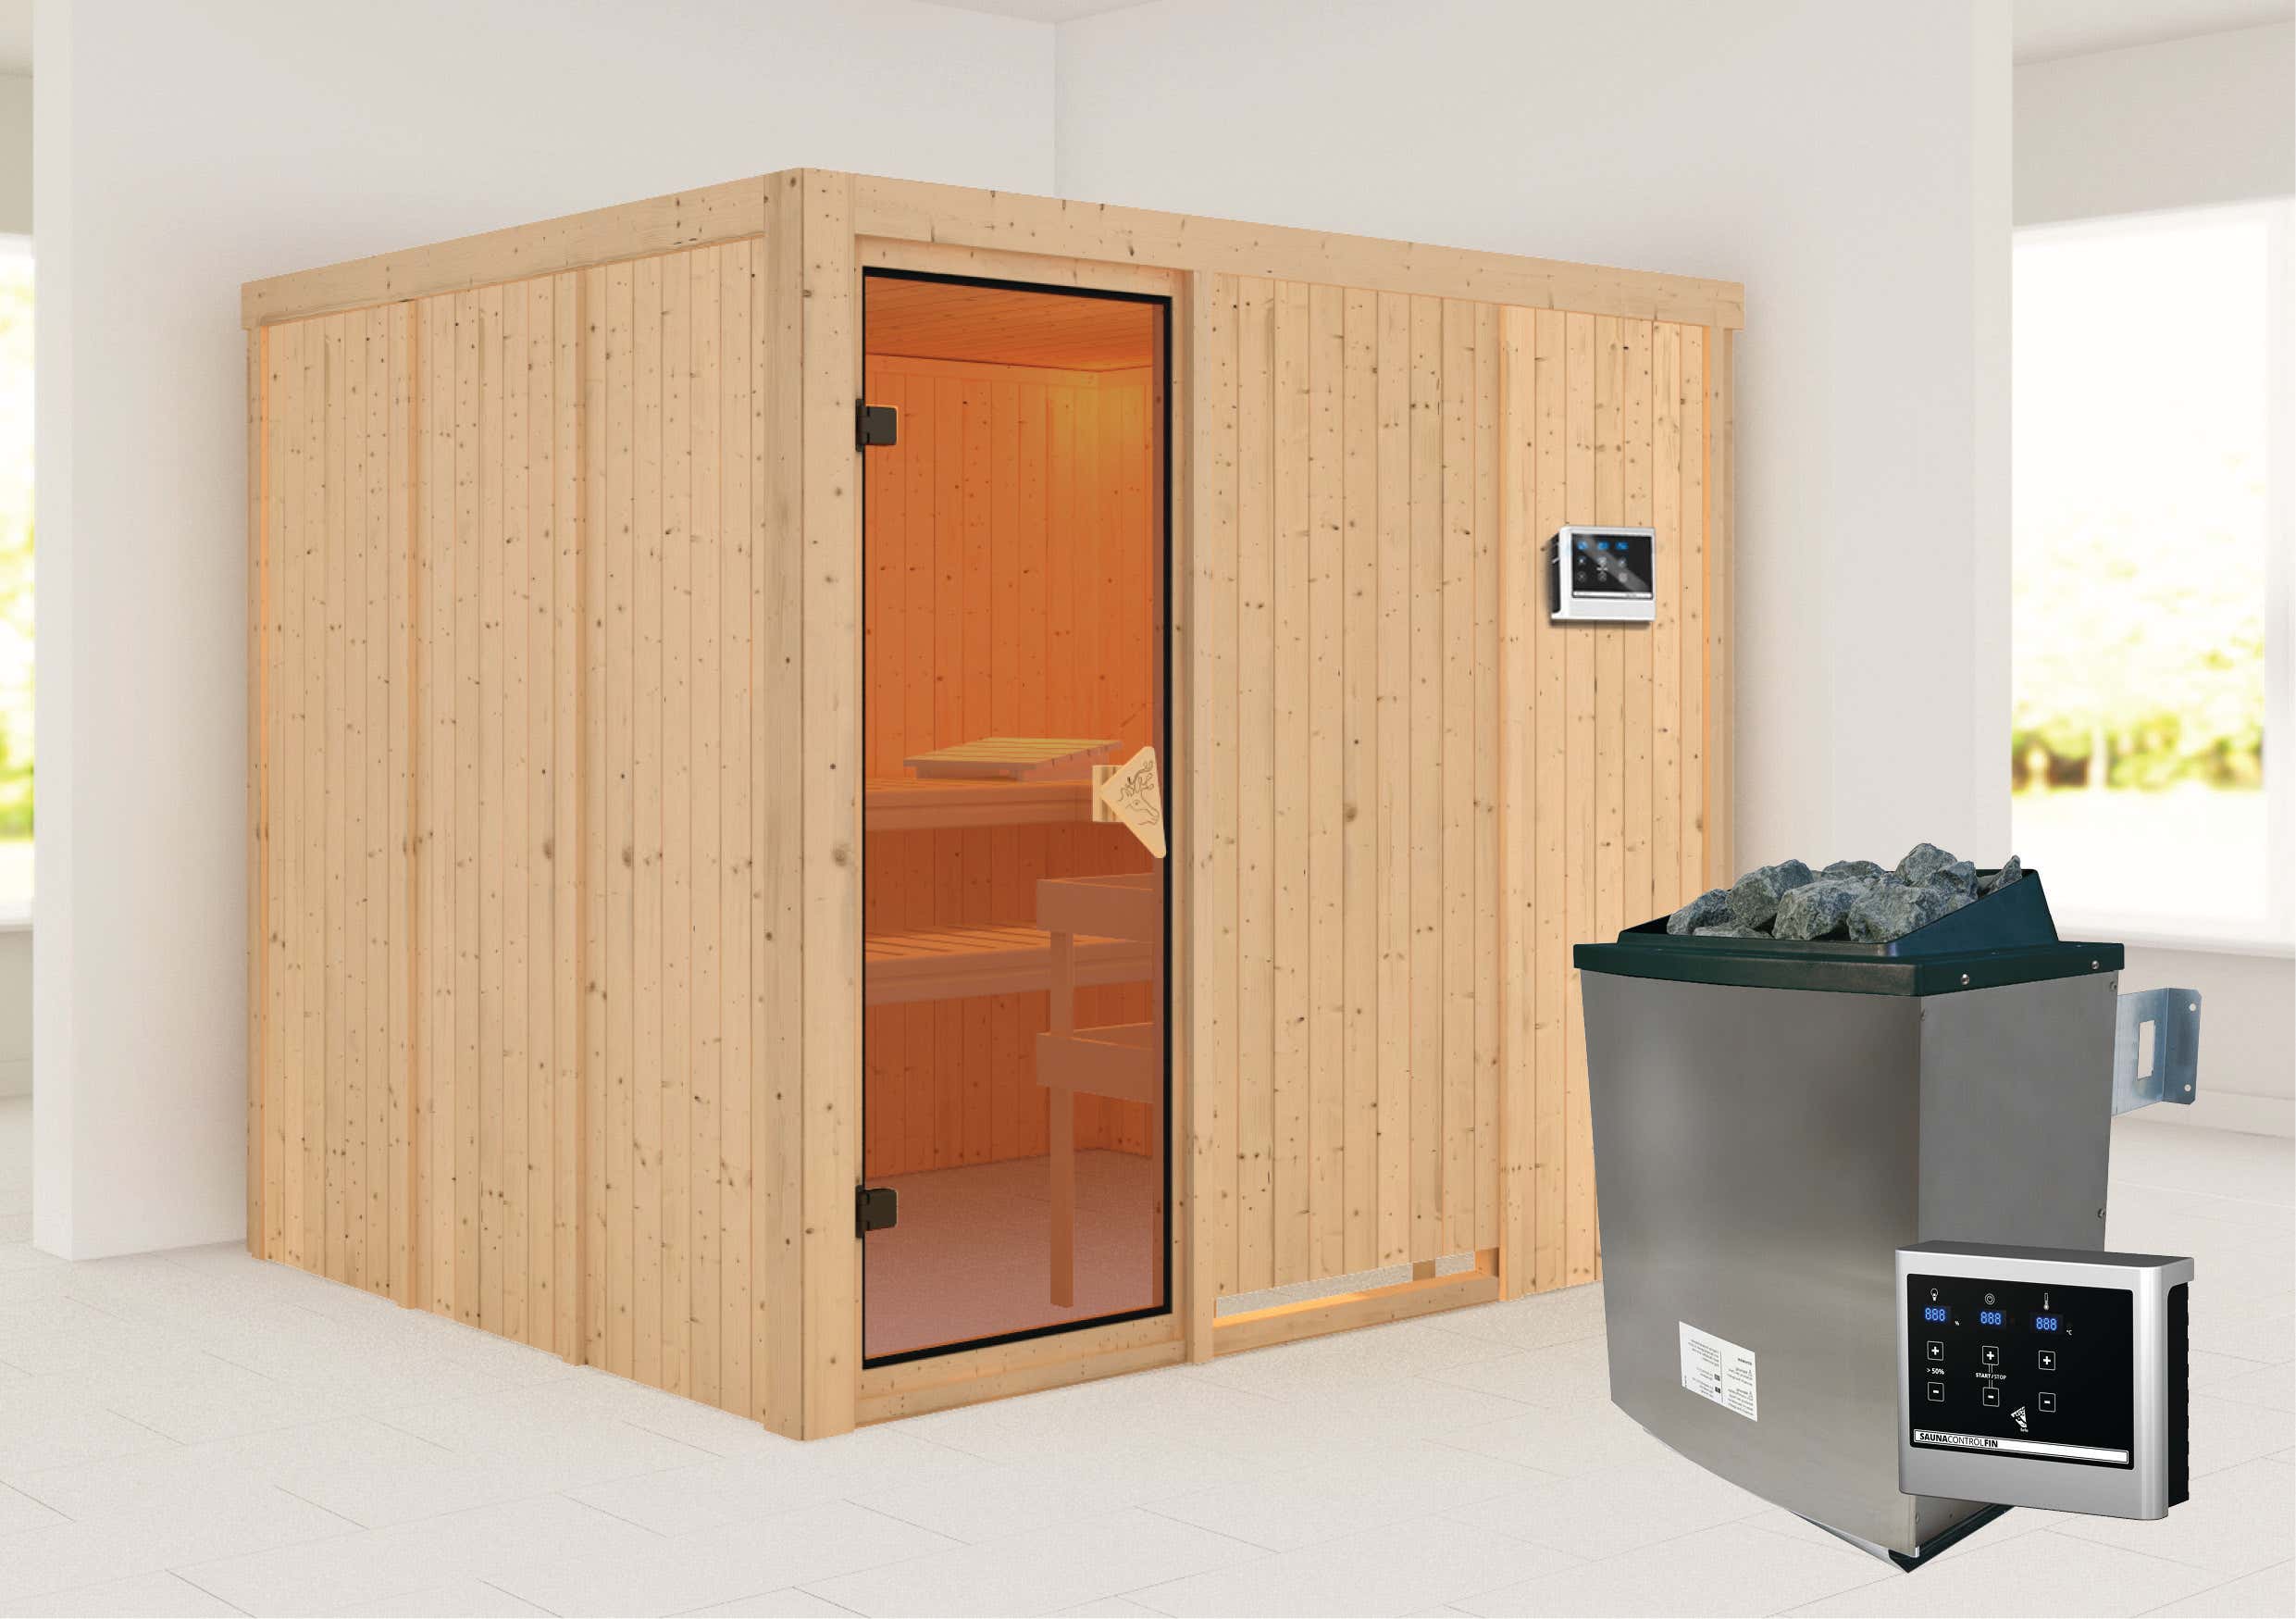 Karibu Sauna Innenkabine Gobin Auswahl der Tür:Massivholz-Energiespartür mit Isolierglas|Saunaofen:9 KW Saunaofen, integr. Steuerung|Ausführung:Mit Dachkranz